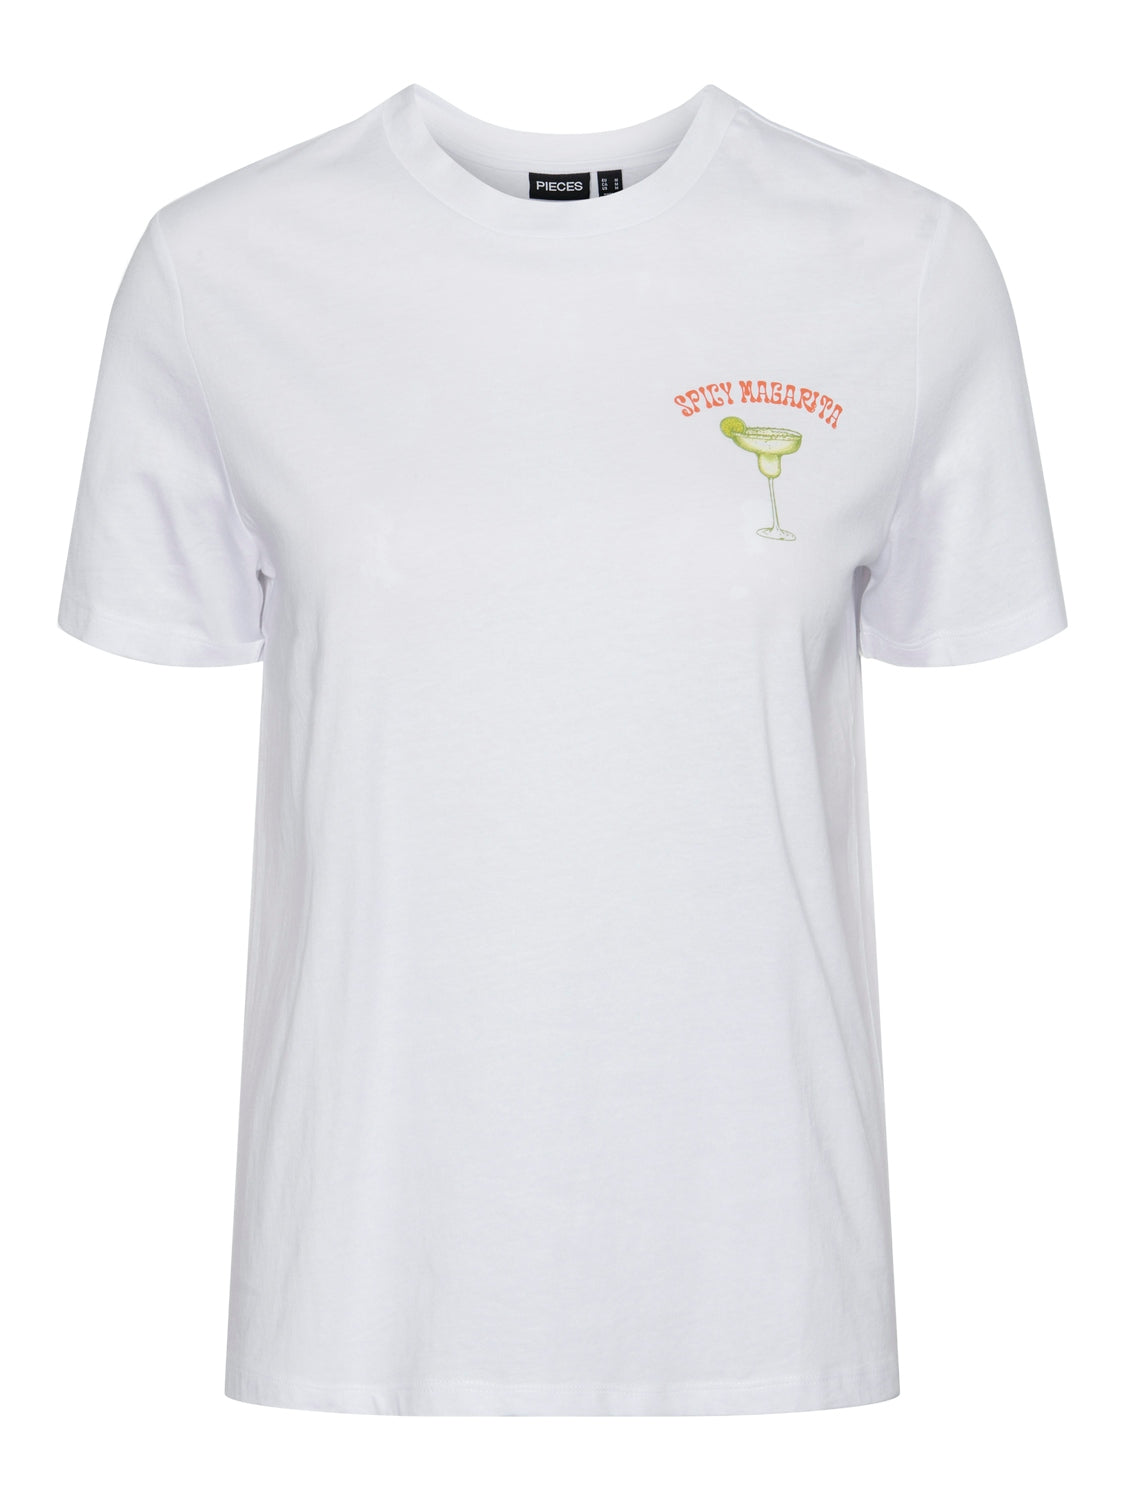 PcKilana Magarita T-Shirt White